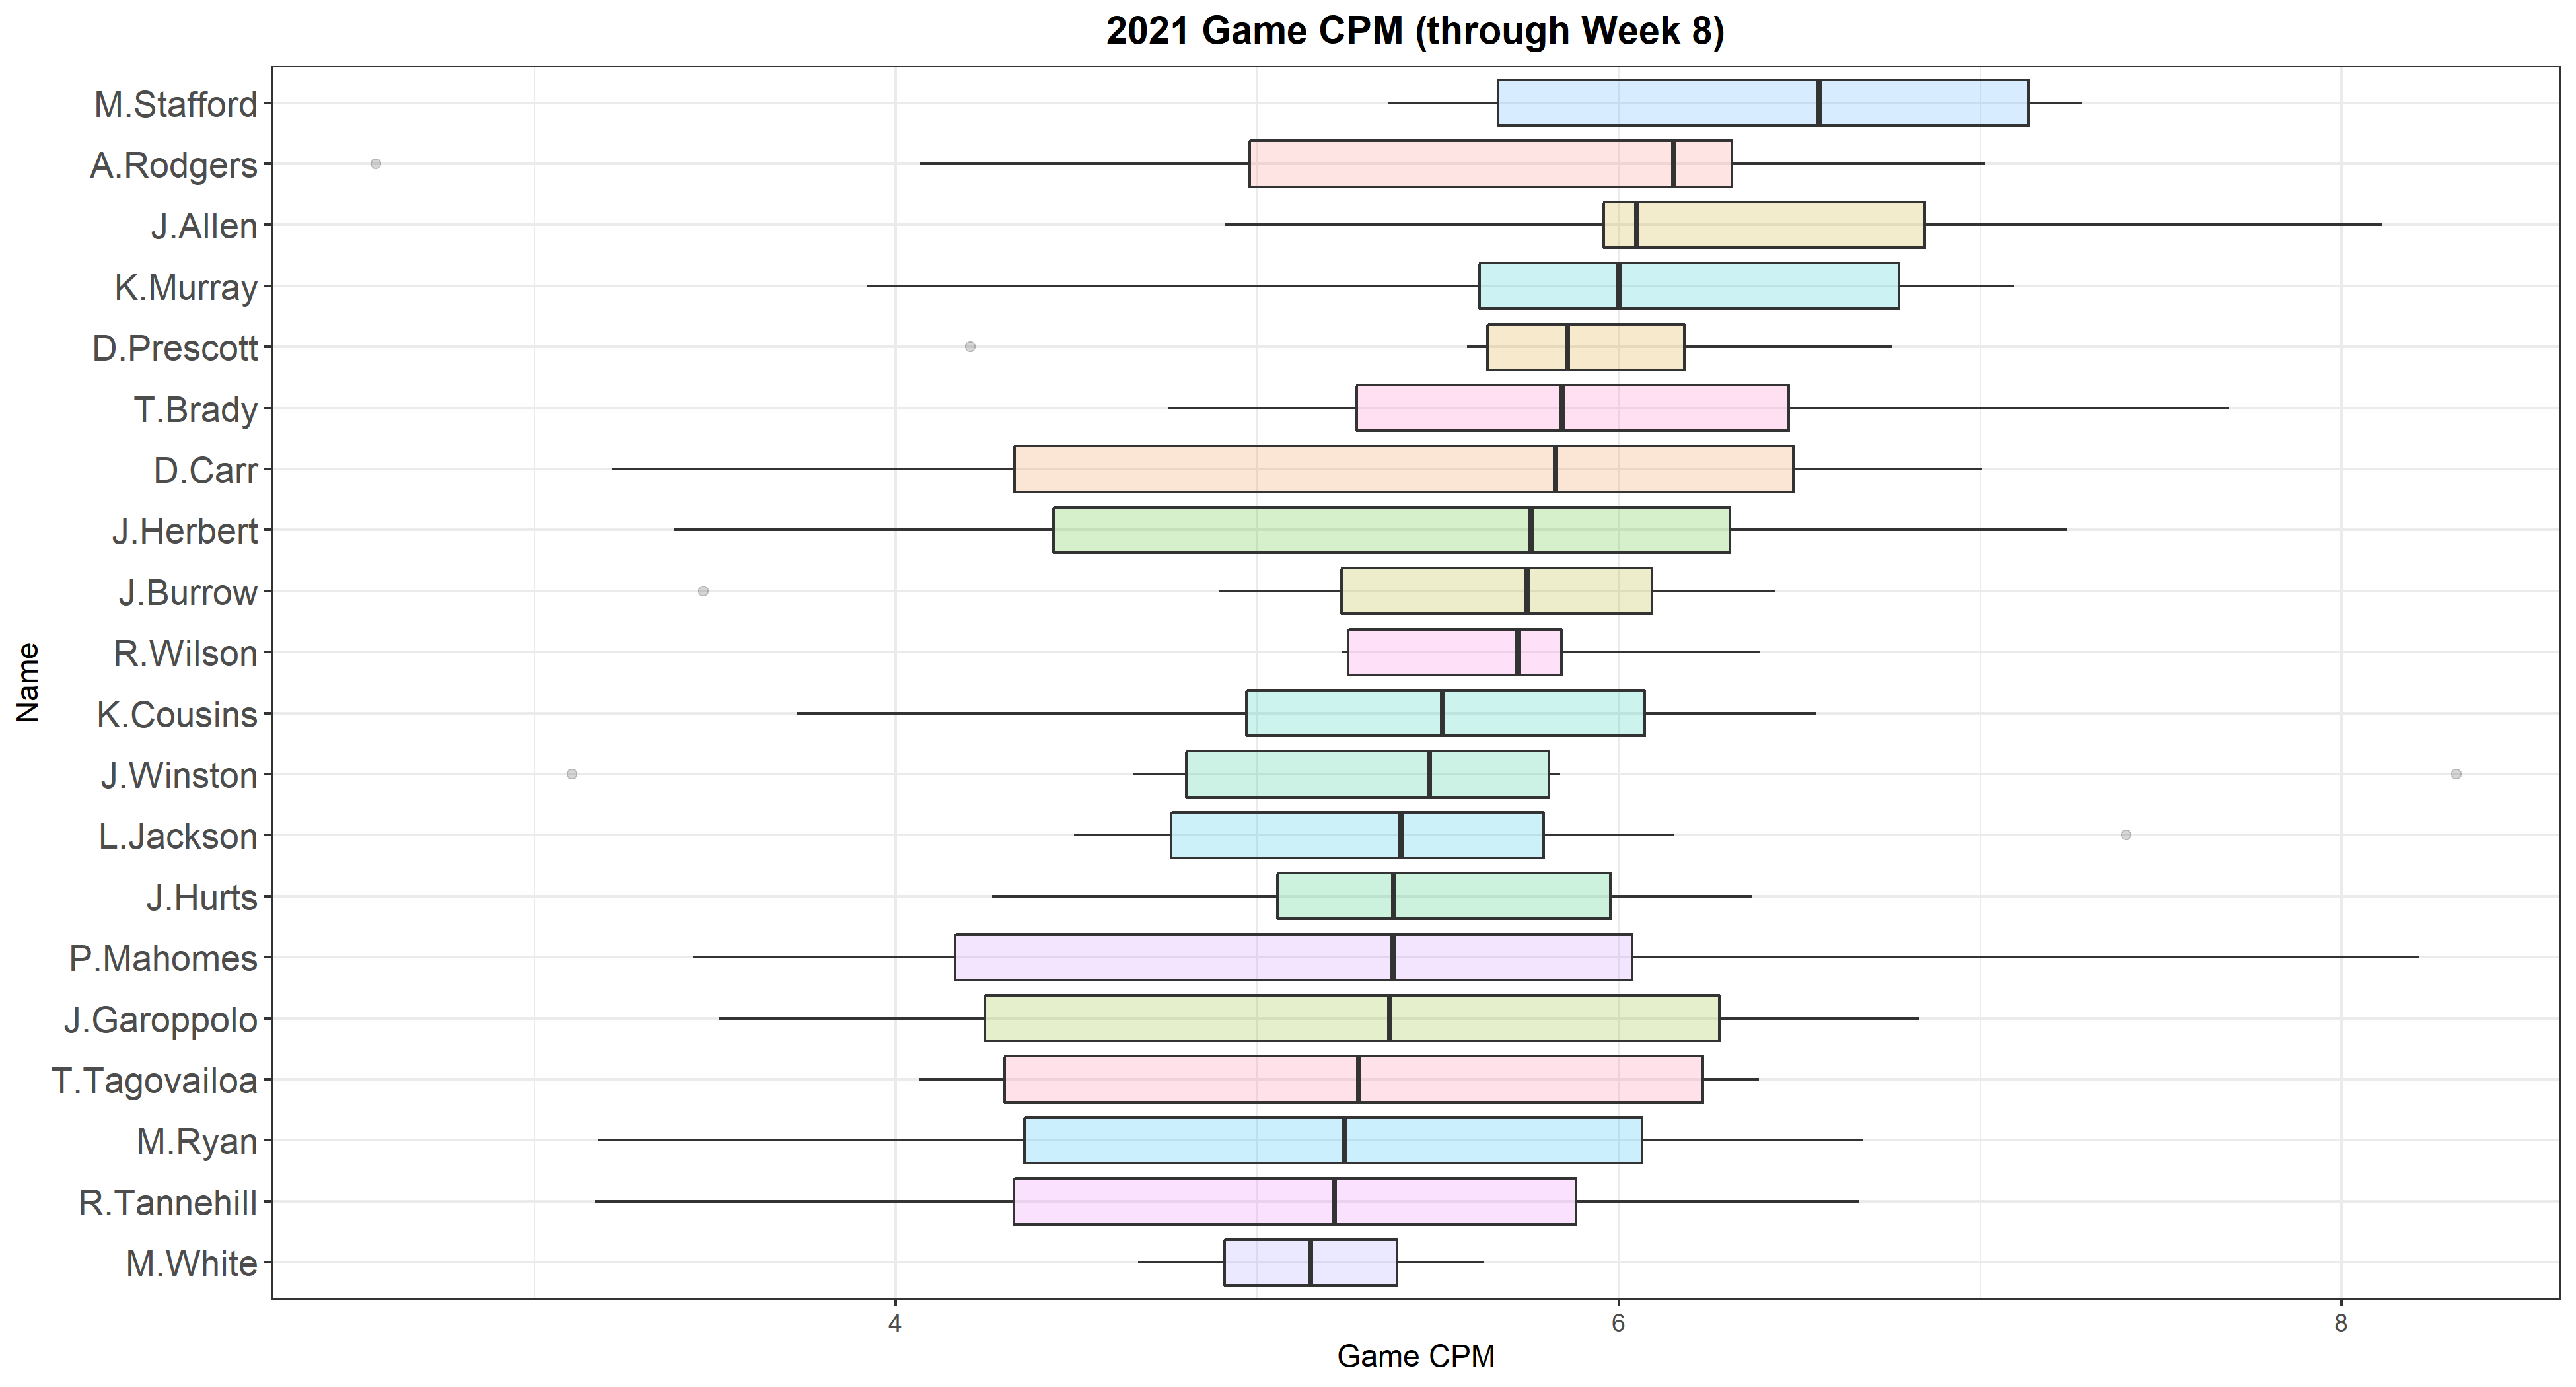 Week 8 CPM Rankings for 2021